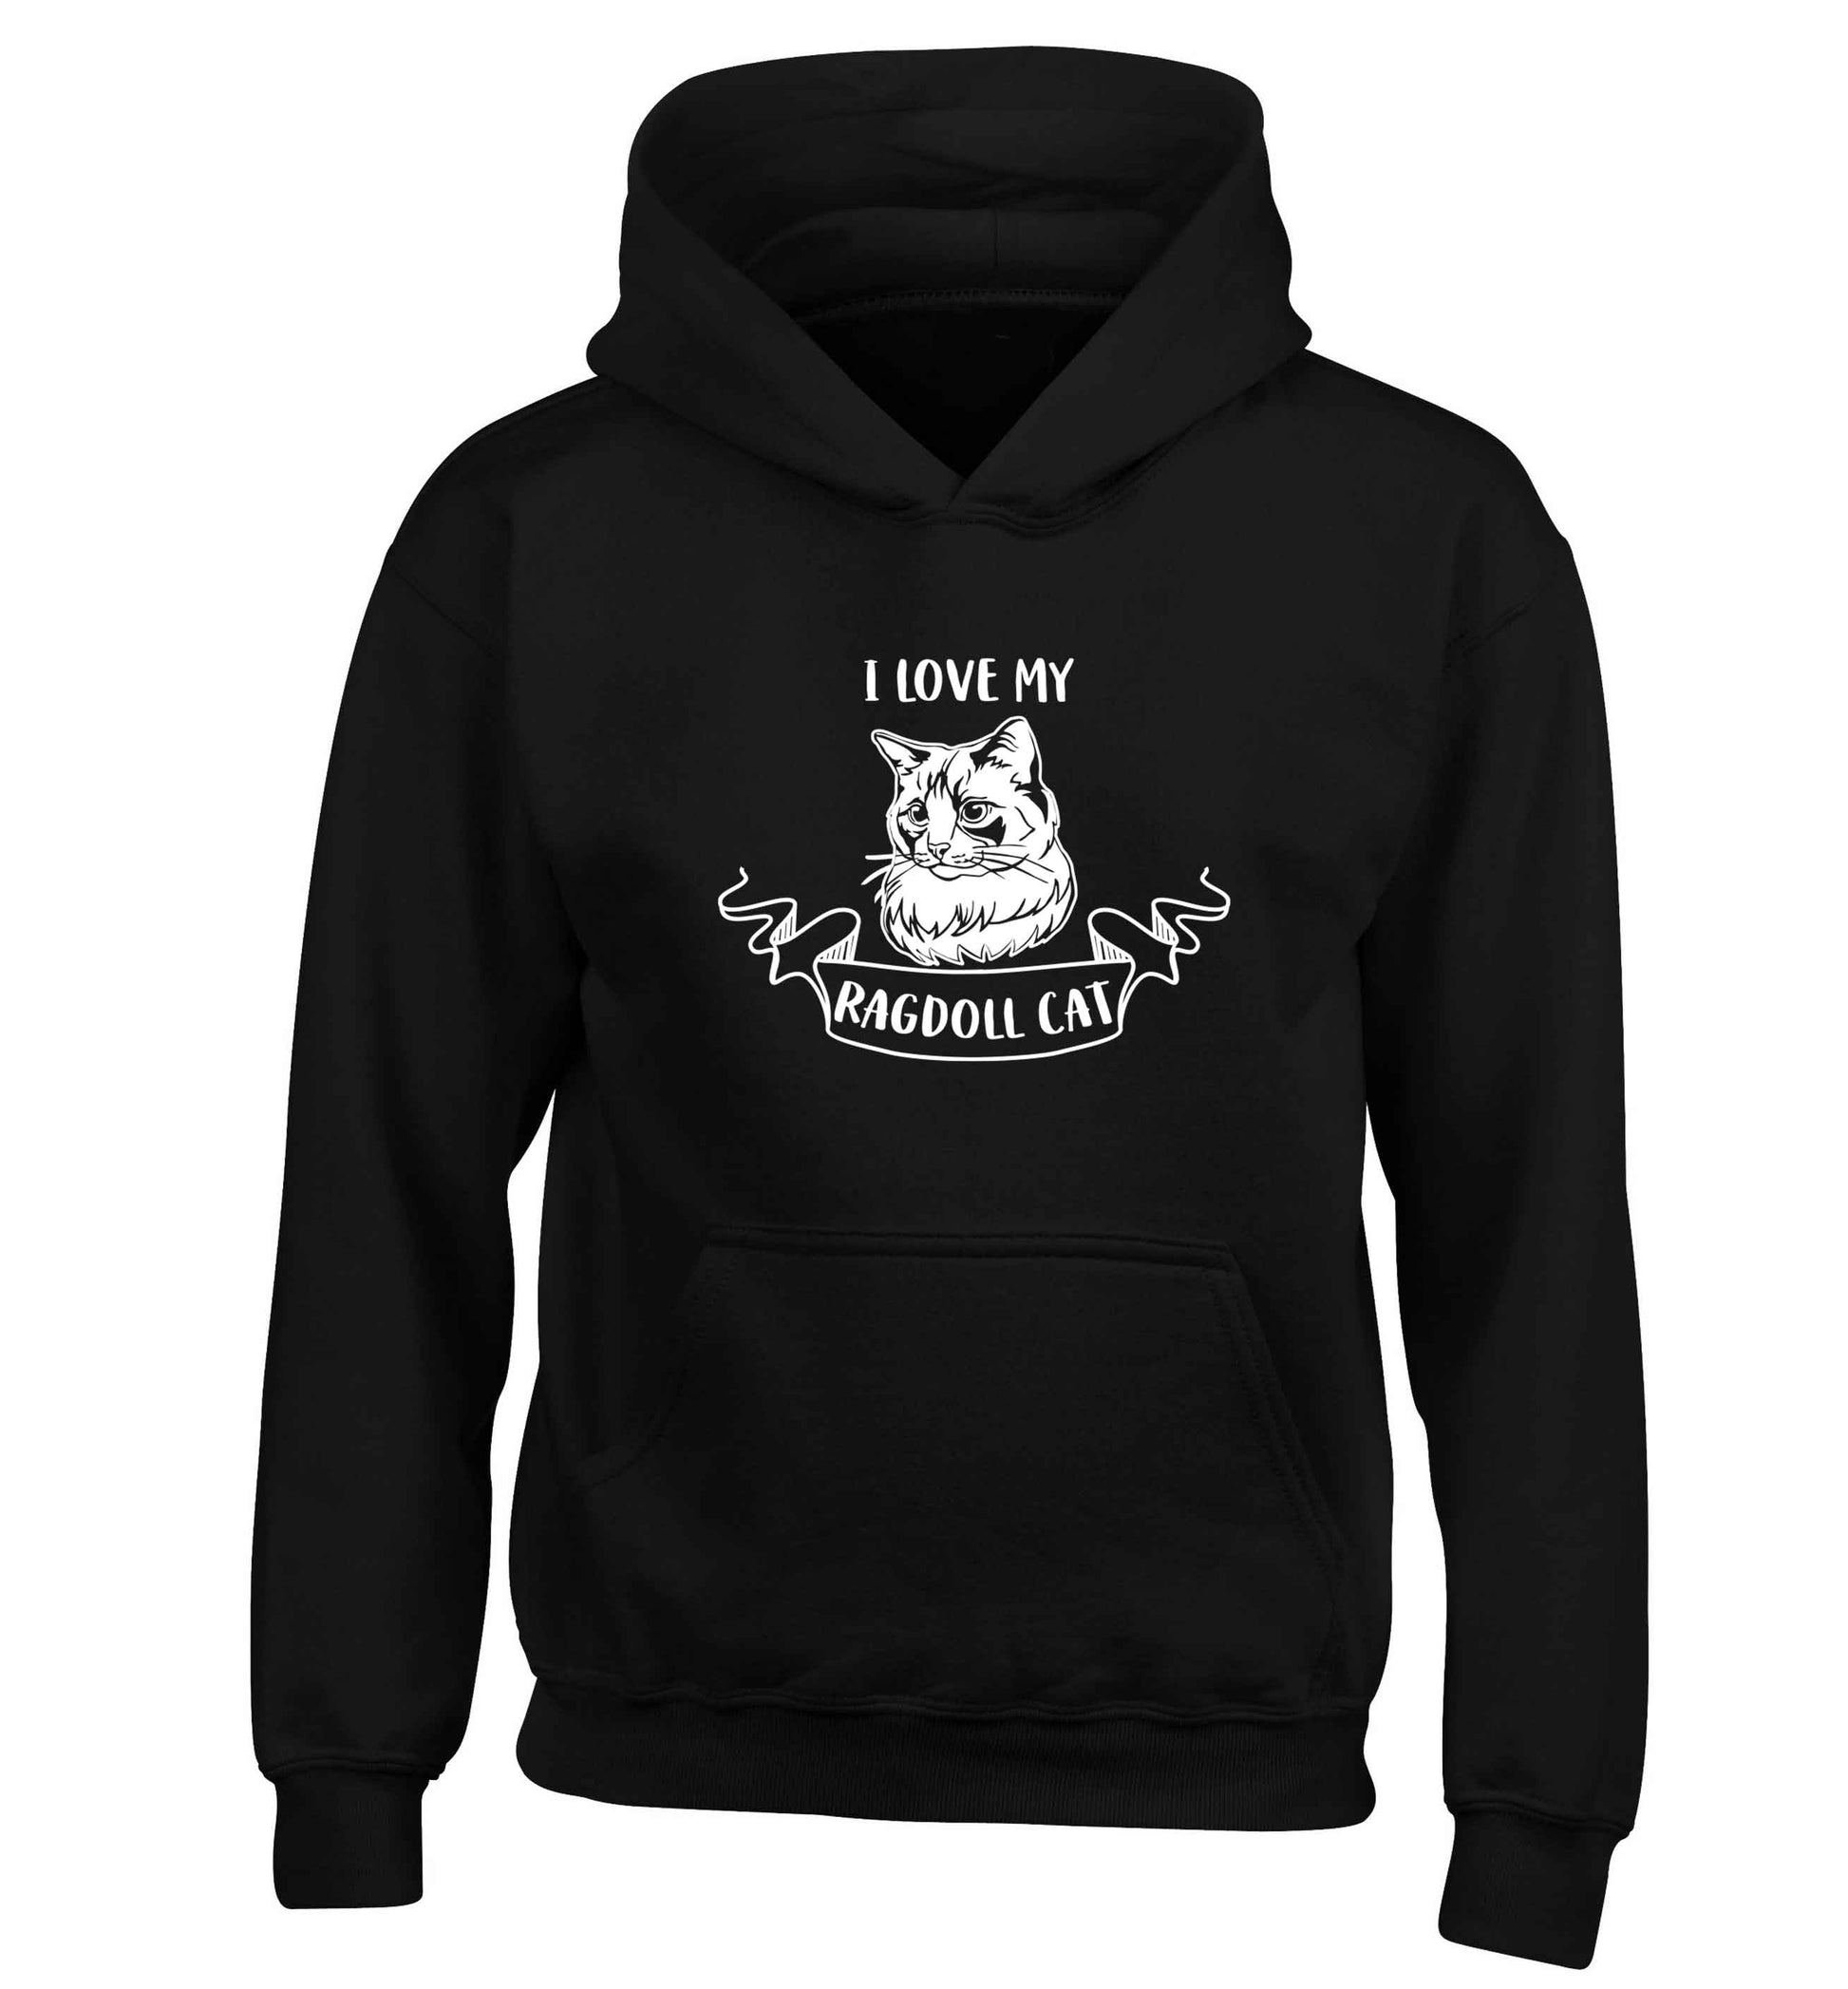 I love my ragdoll cat children's black hoodie 12-13 Years